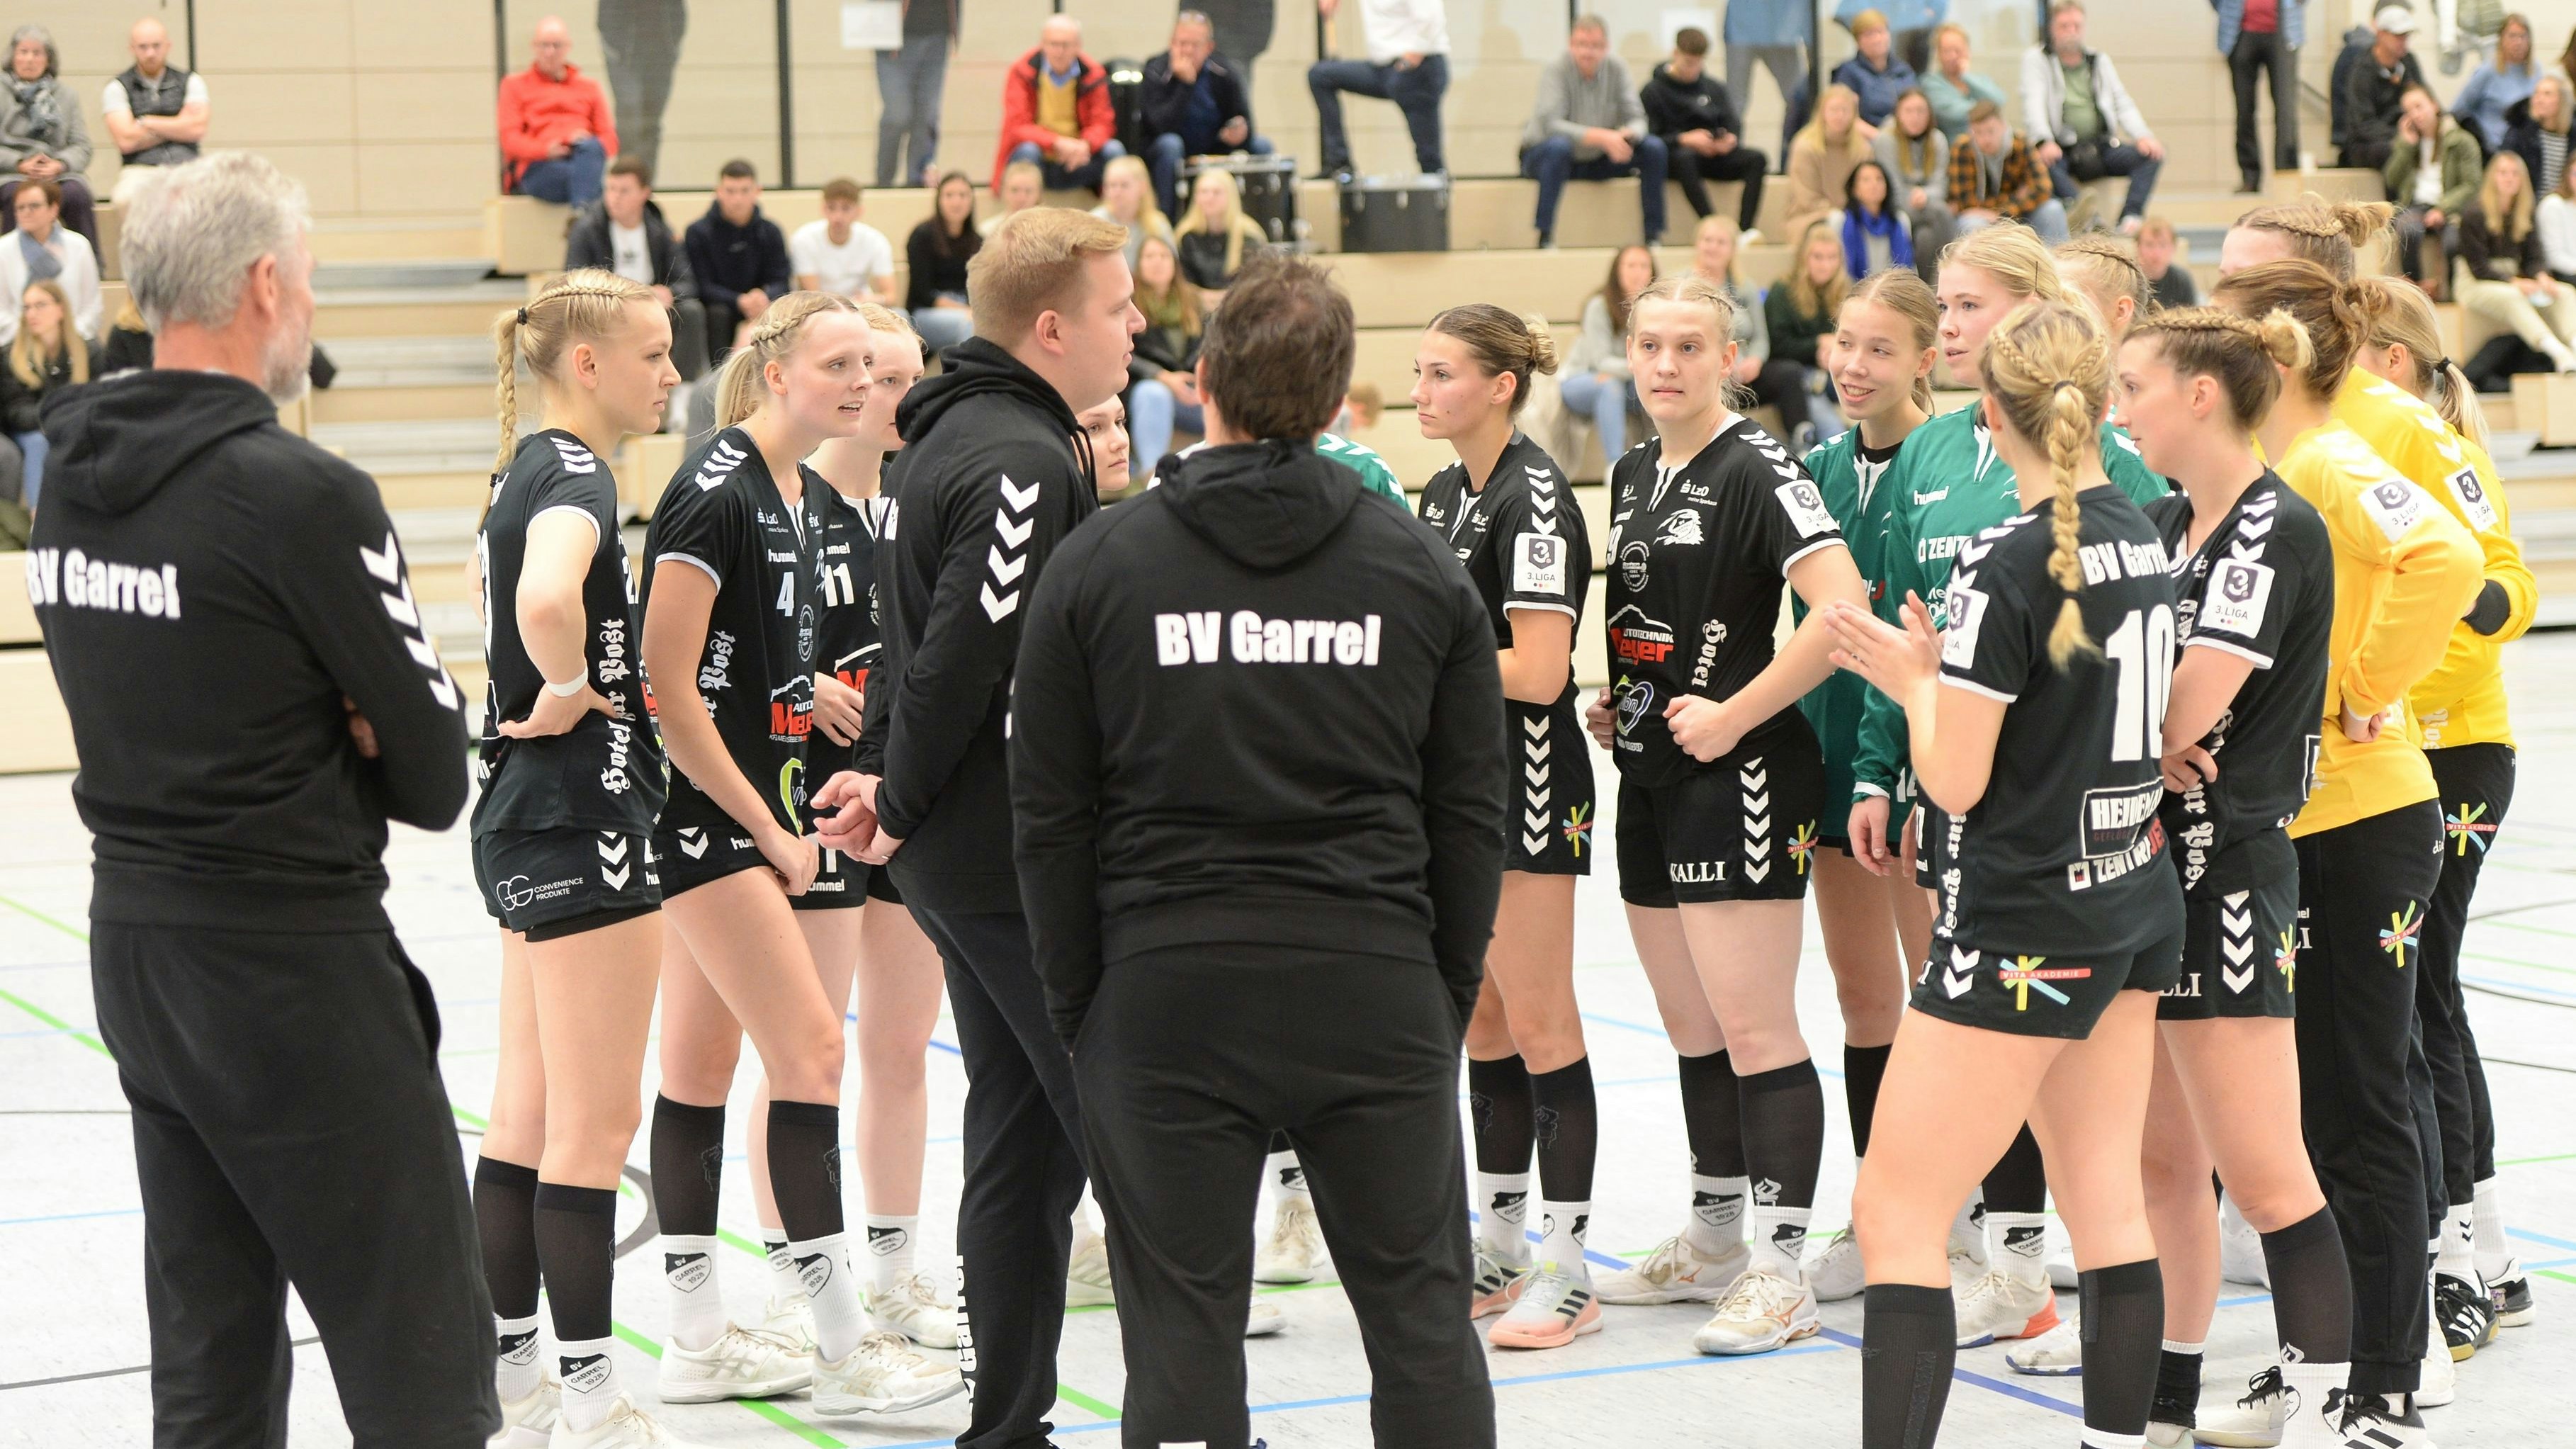 VergeblichesWarten: Wei die Schiedsrichter nicht erschienen waren, fiel das Spiel der Garreler Handballfrauen beim VfL Oldenburg II aus. Foto: Langosch